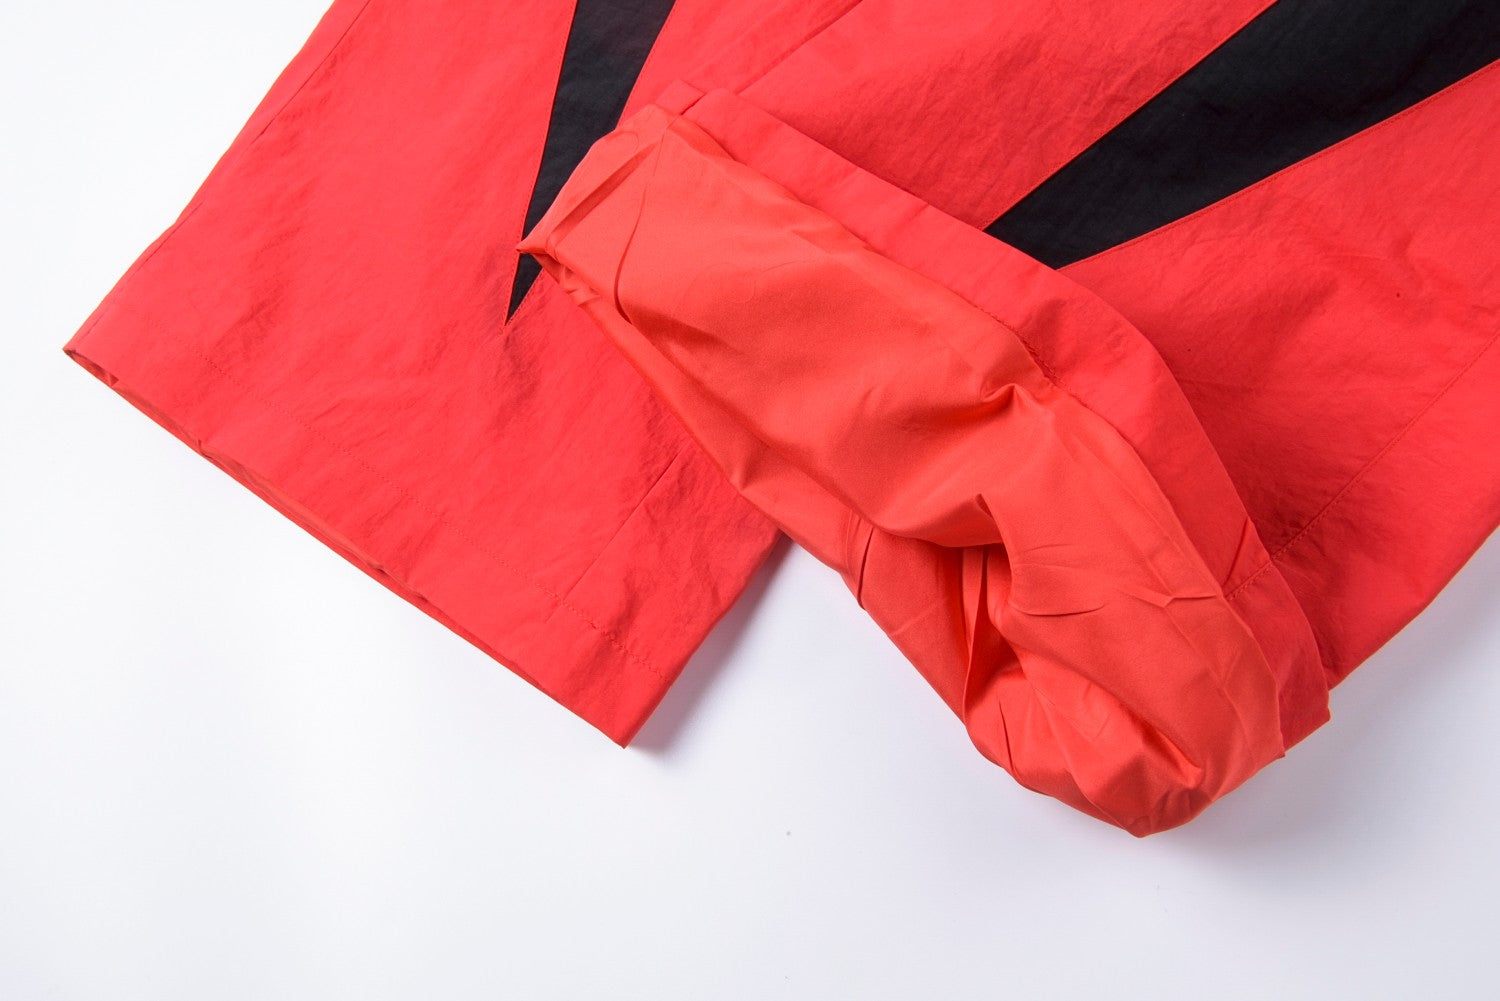 Hellstar Thriller Red Track Jacket